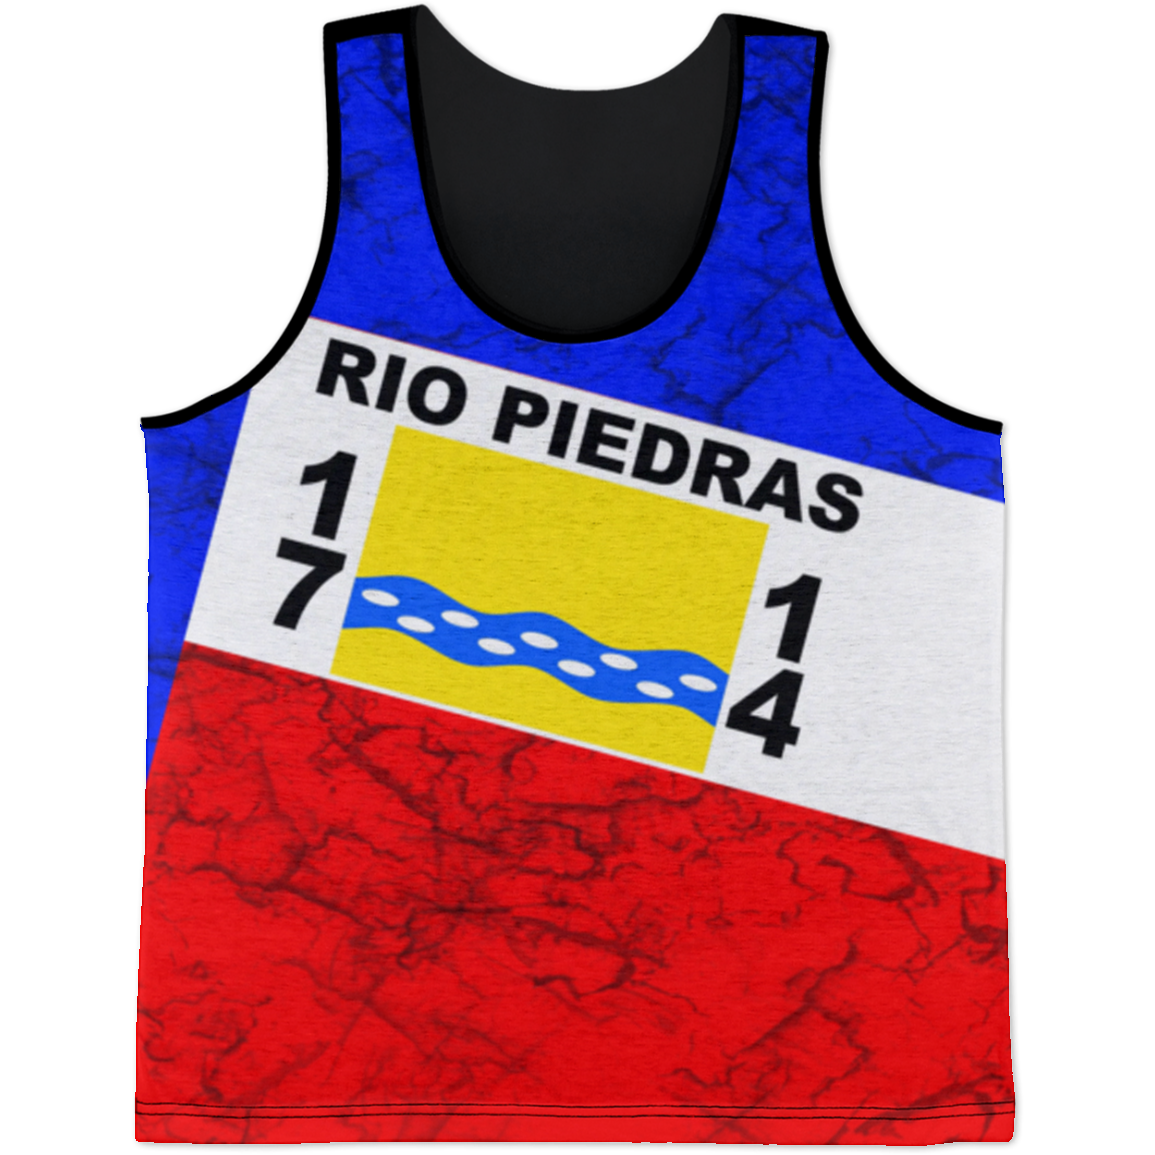 Rio Piedras Tank Top - Puerto Rican Pride